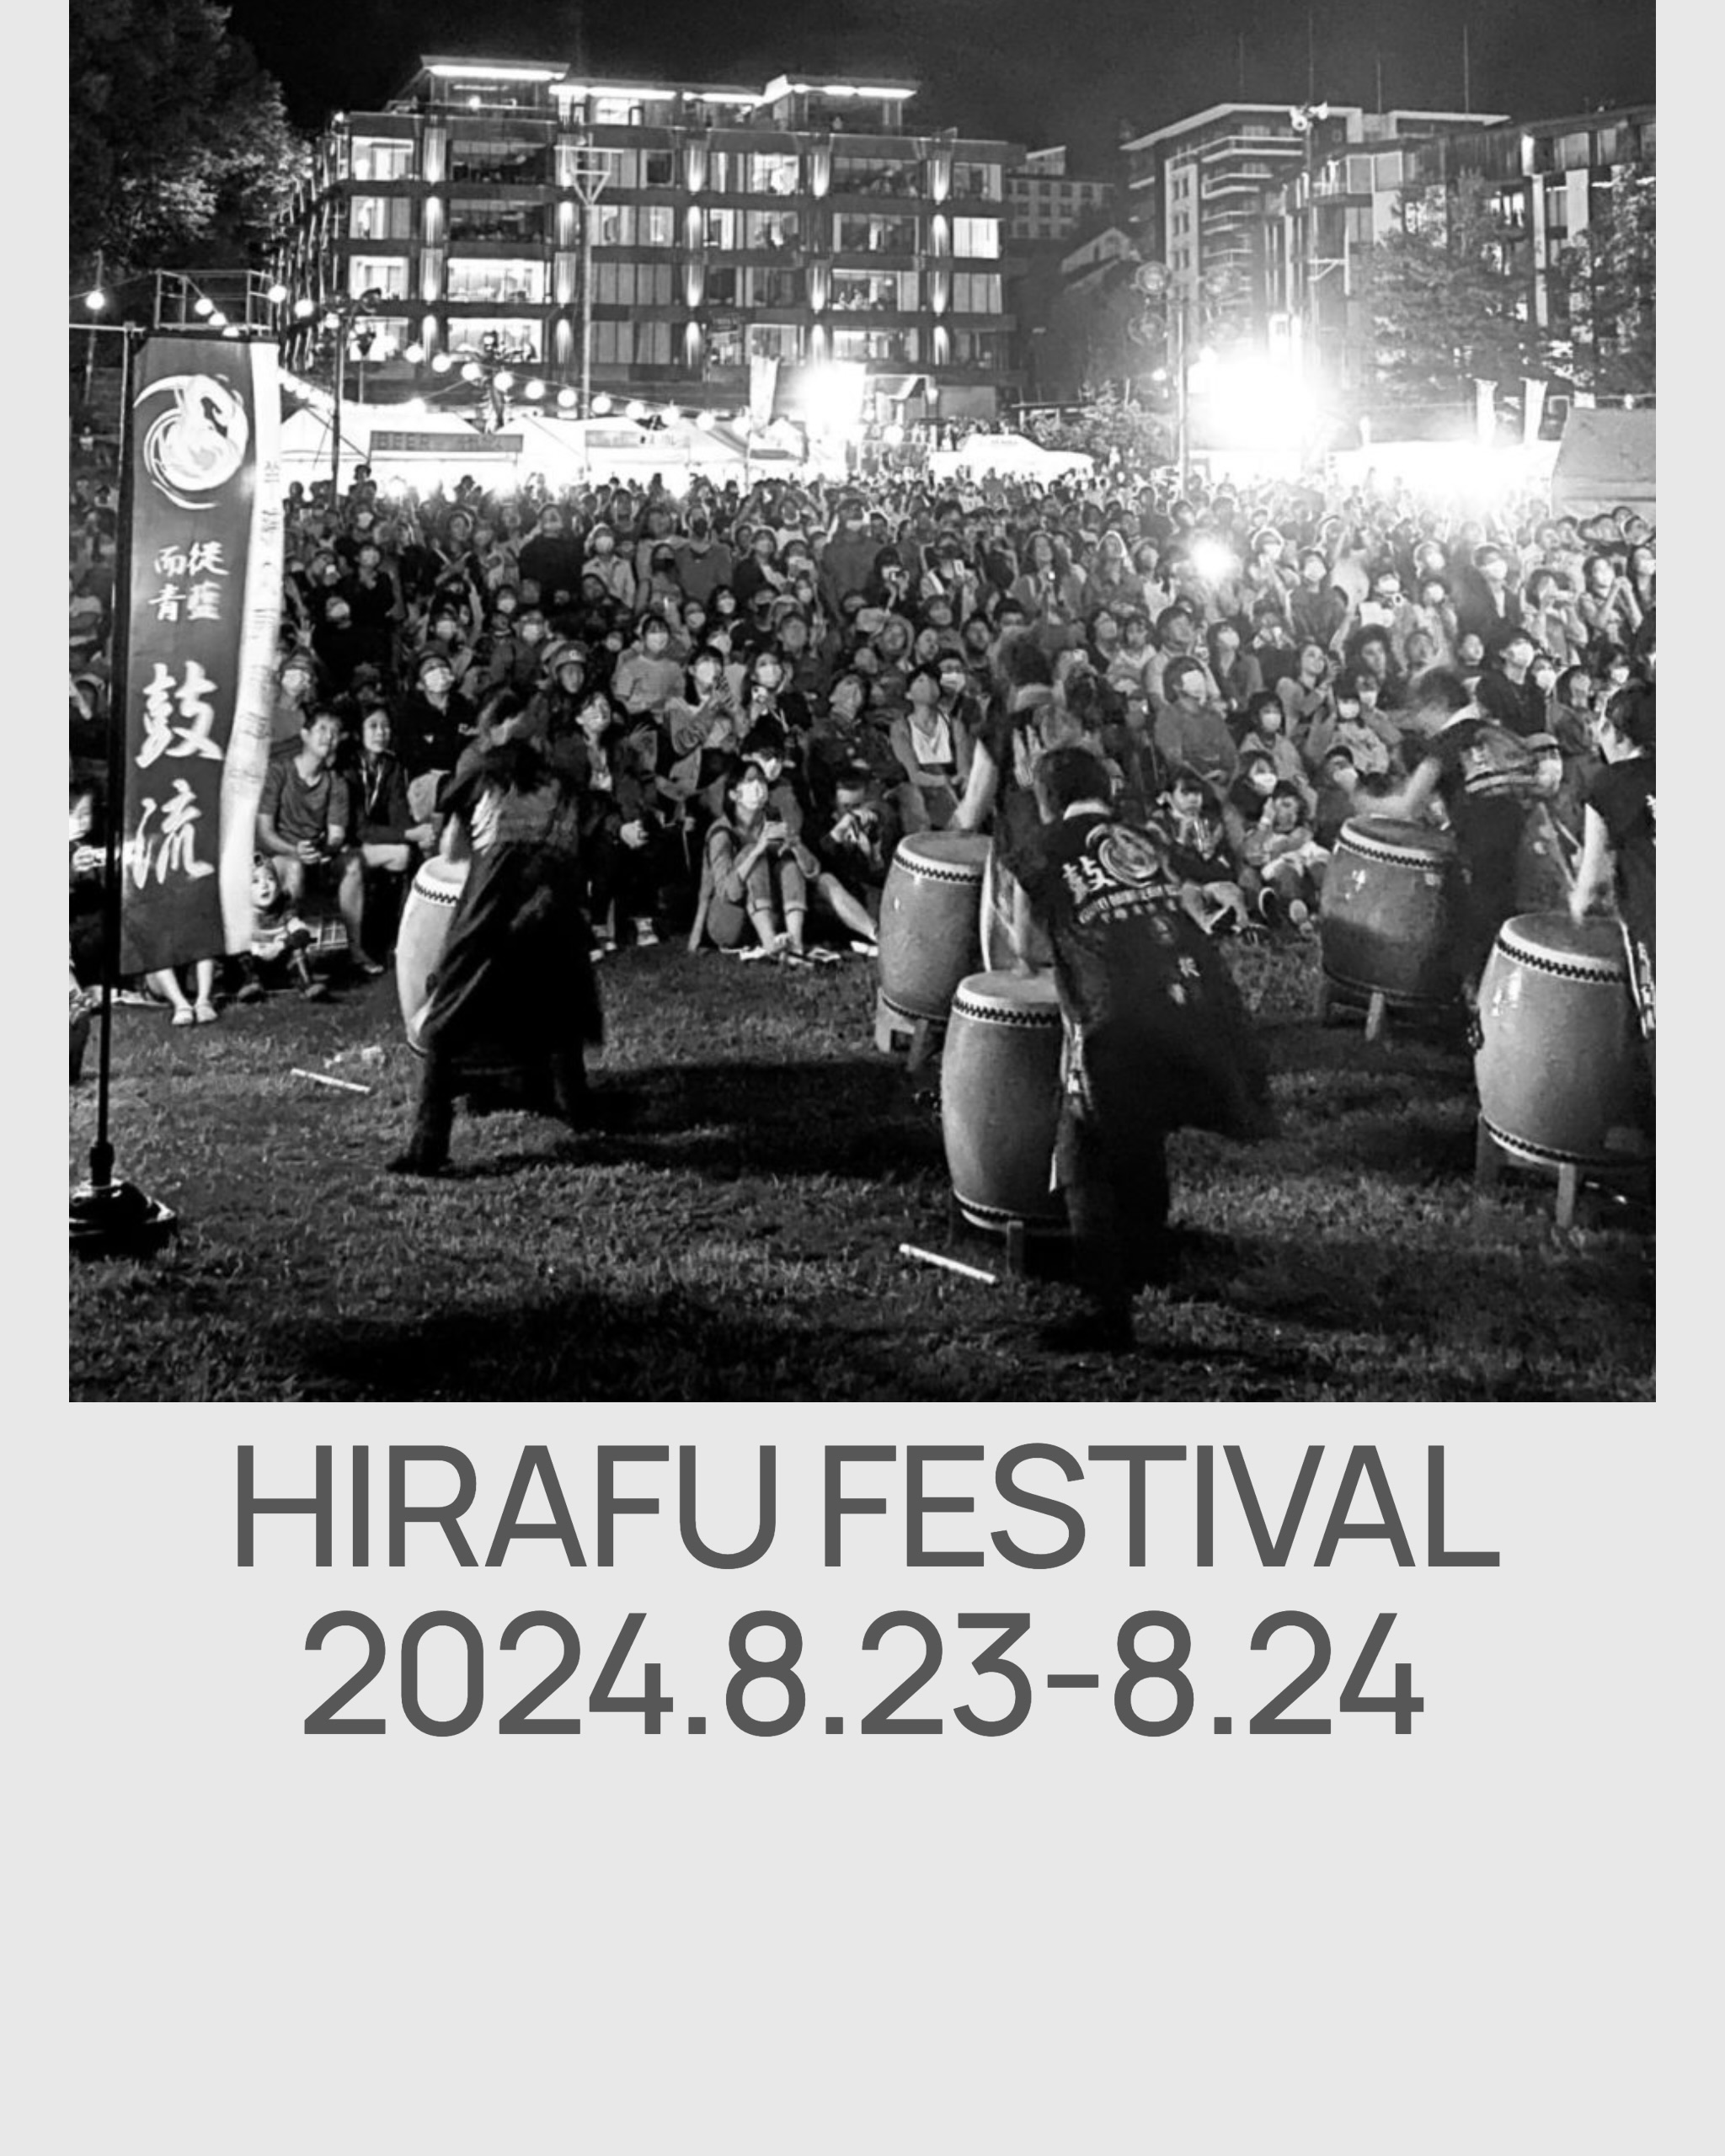 Hirafu Festival 2024